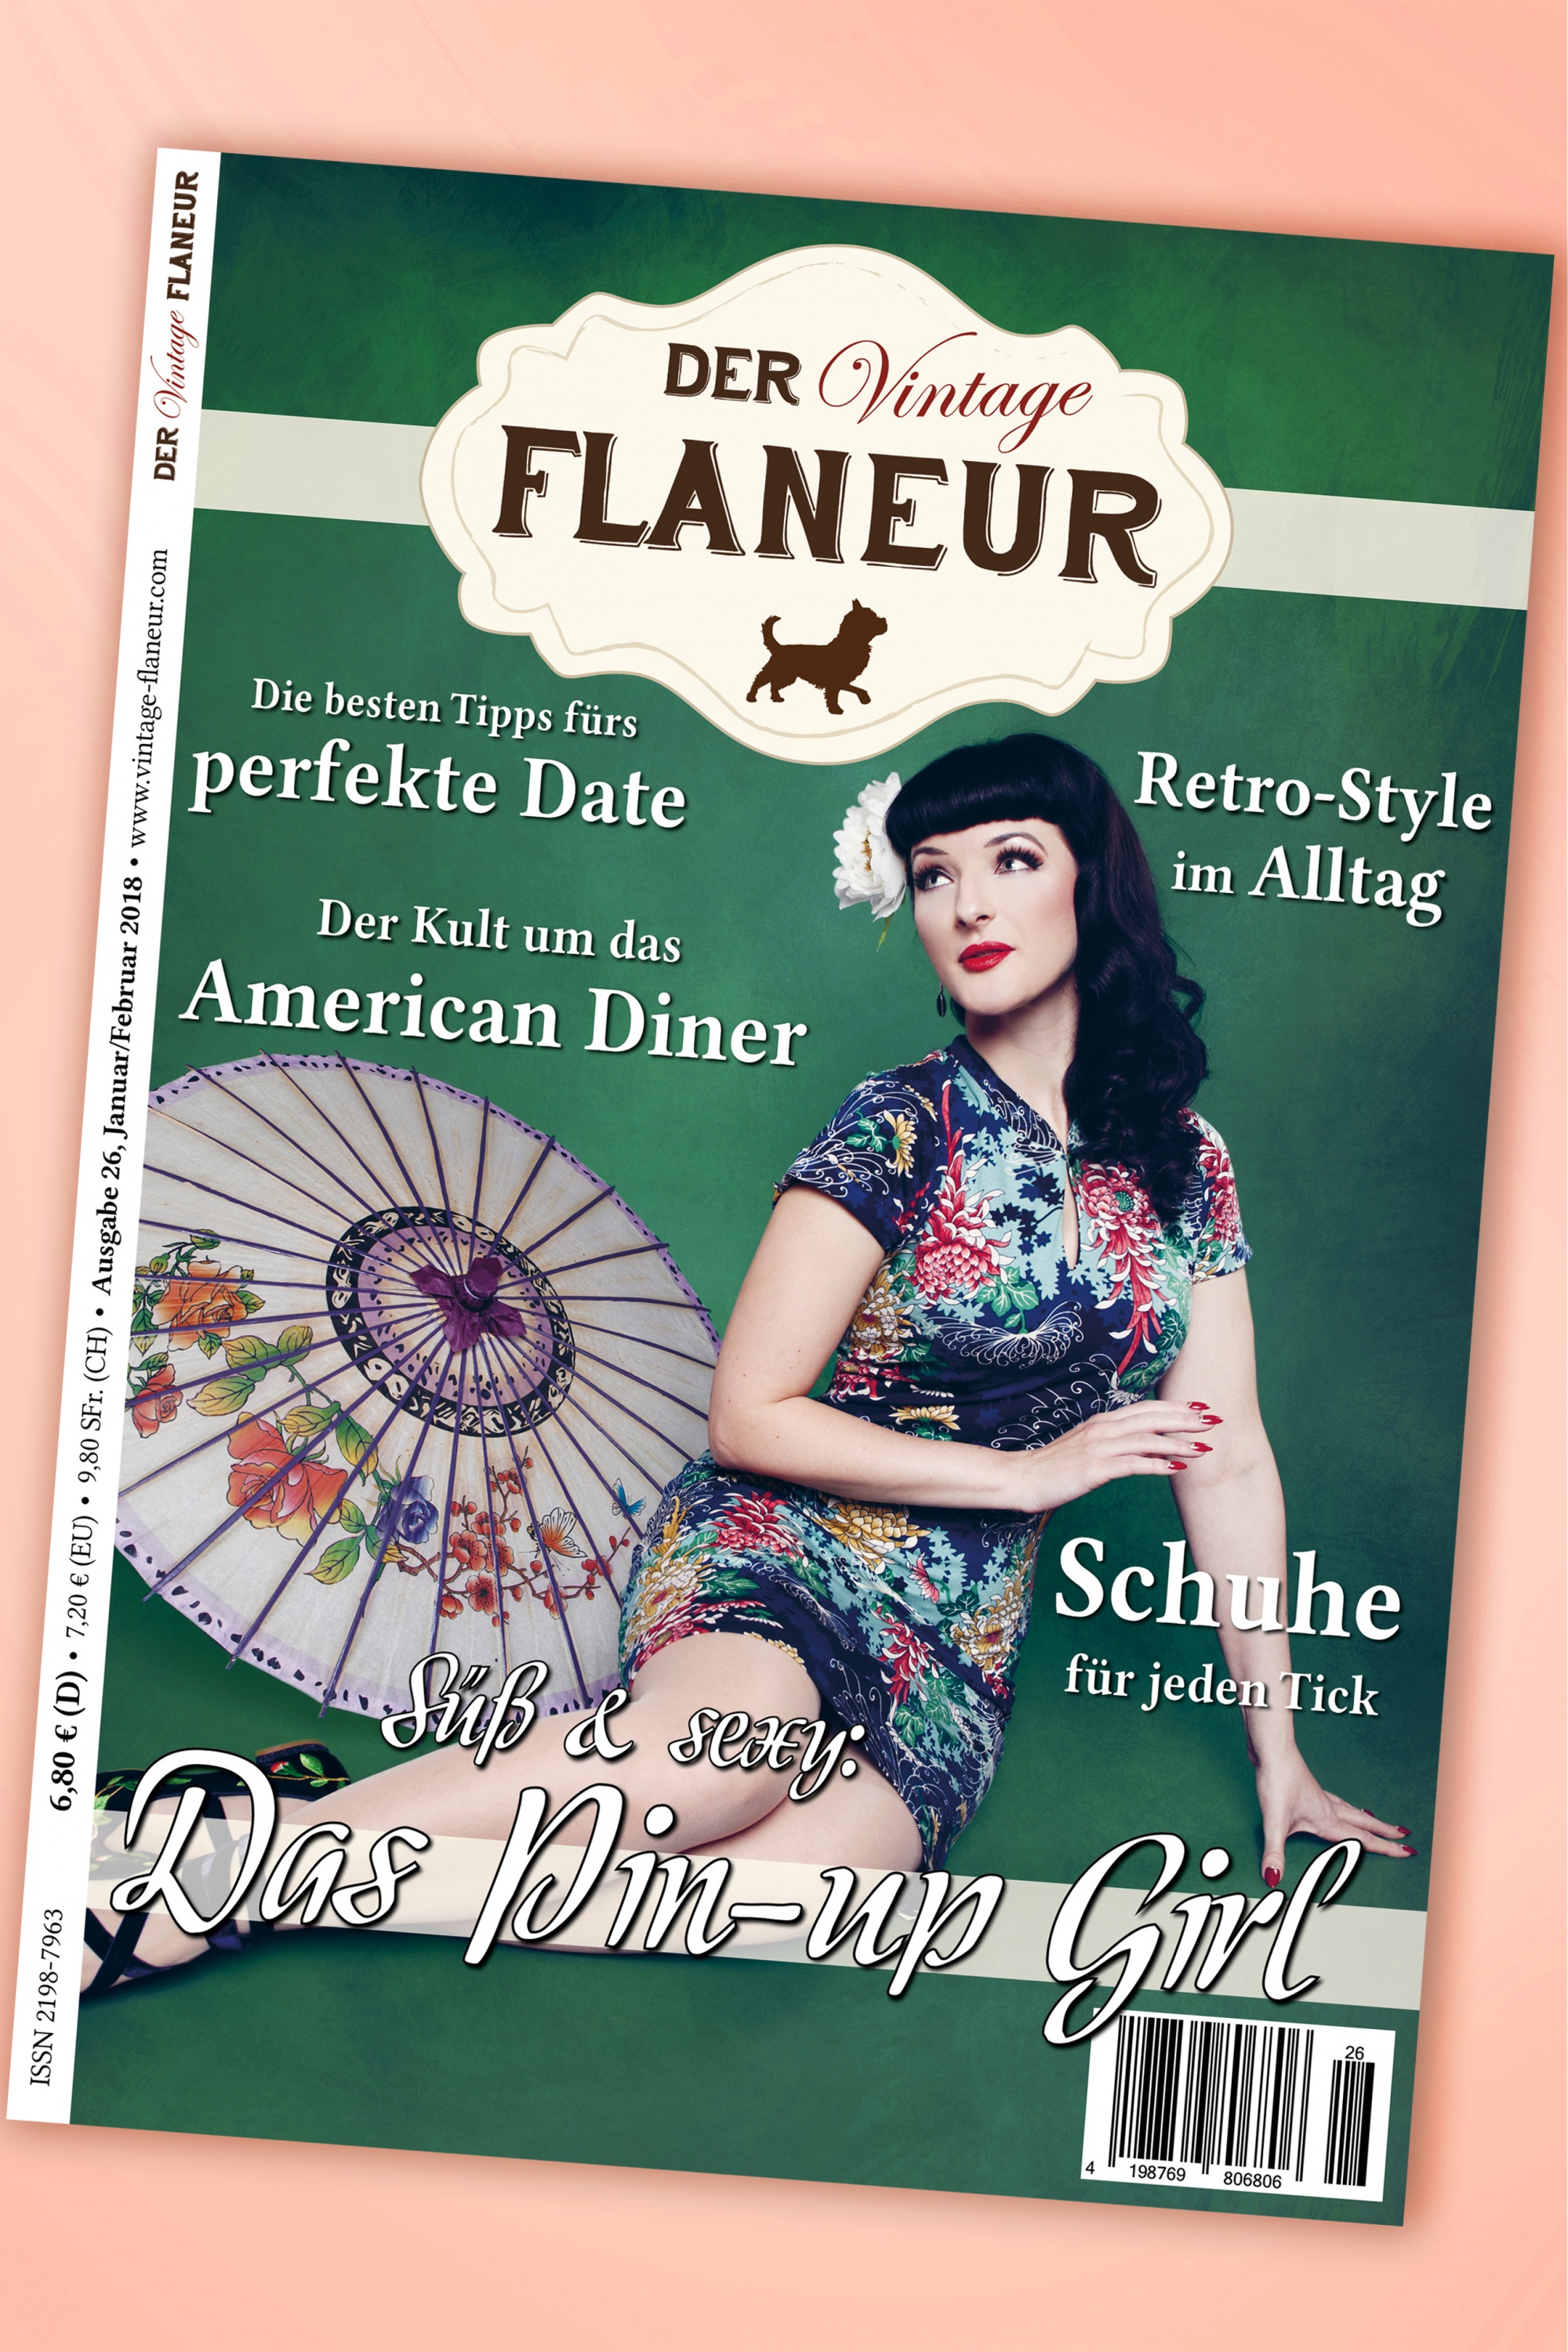 Der Vintage Flaneur - Der Vintage Flaneur Uitgegeven op 26, 2018